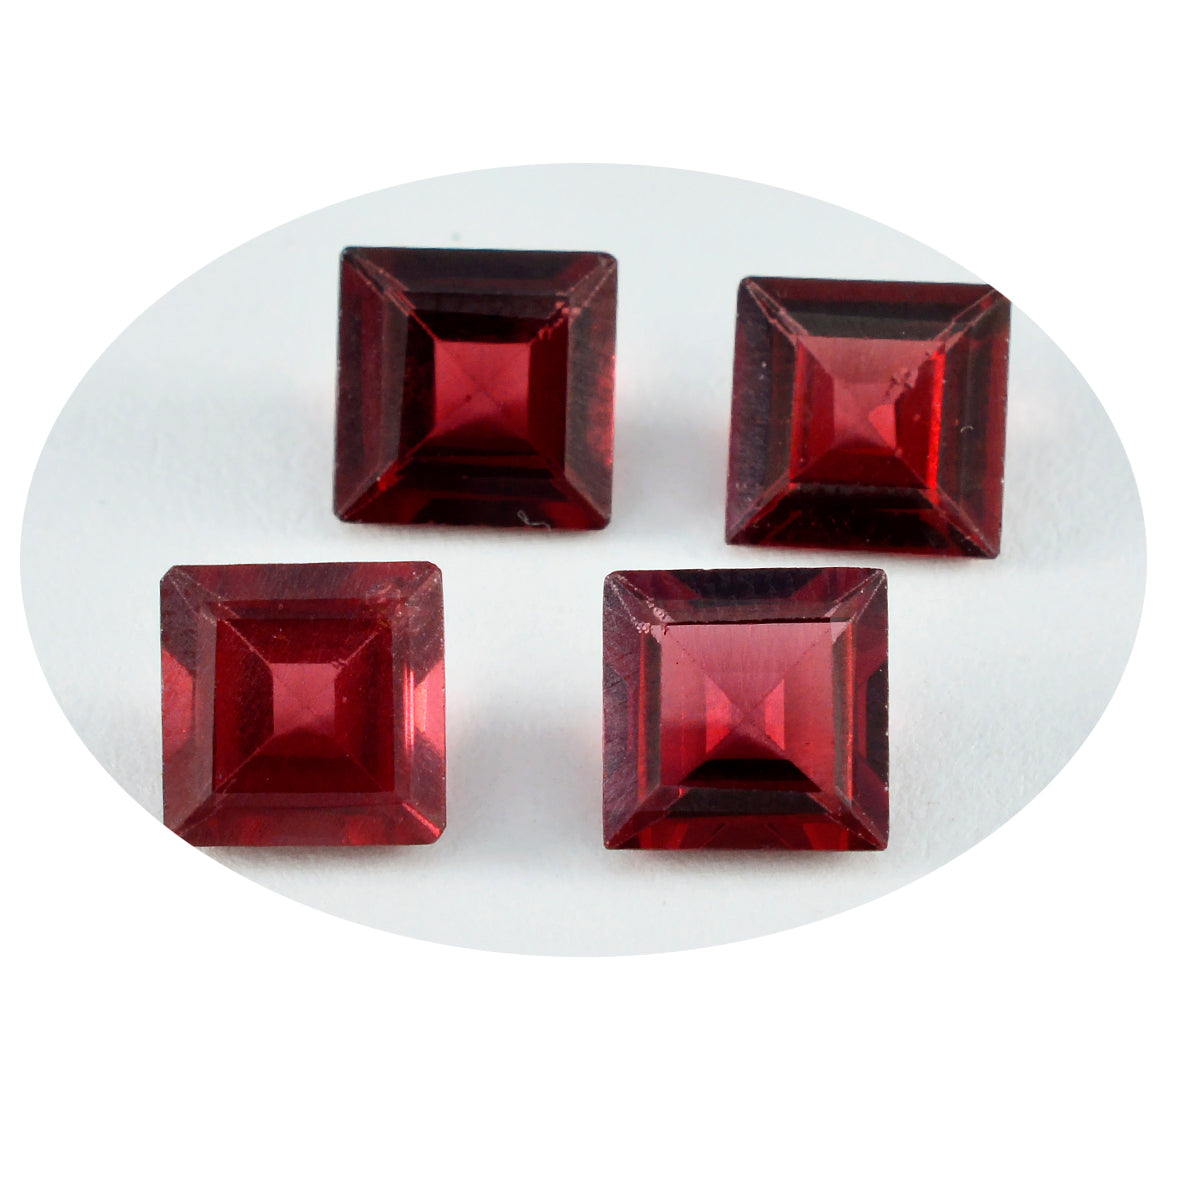 riyogems 1pc véritable grenat rouge à facettes 8x8 mm forme carrée jolie pierre précieuse de qualité